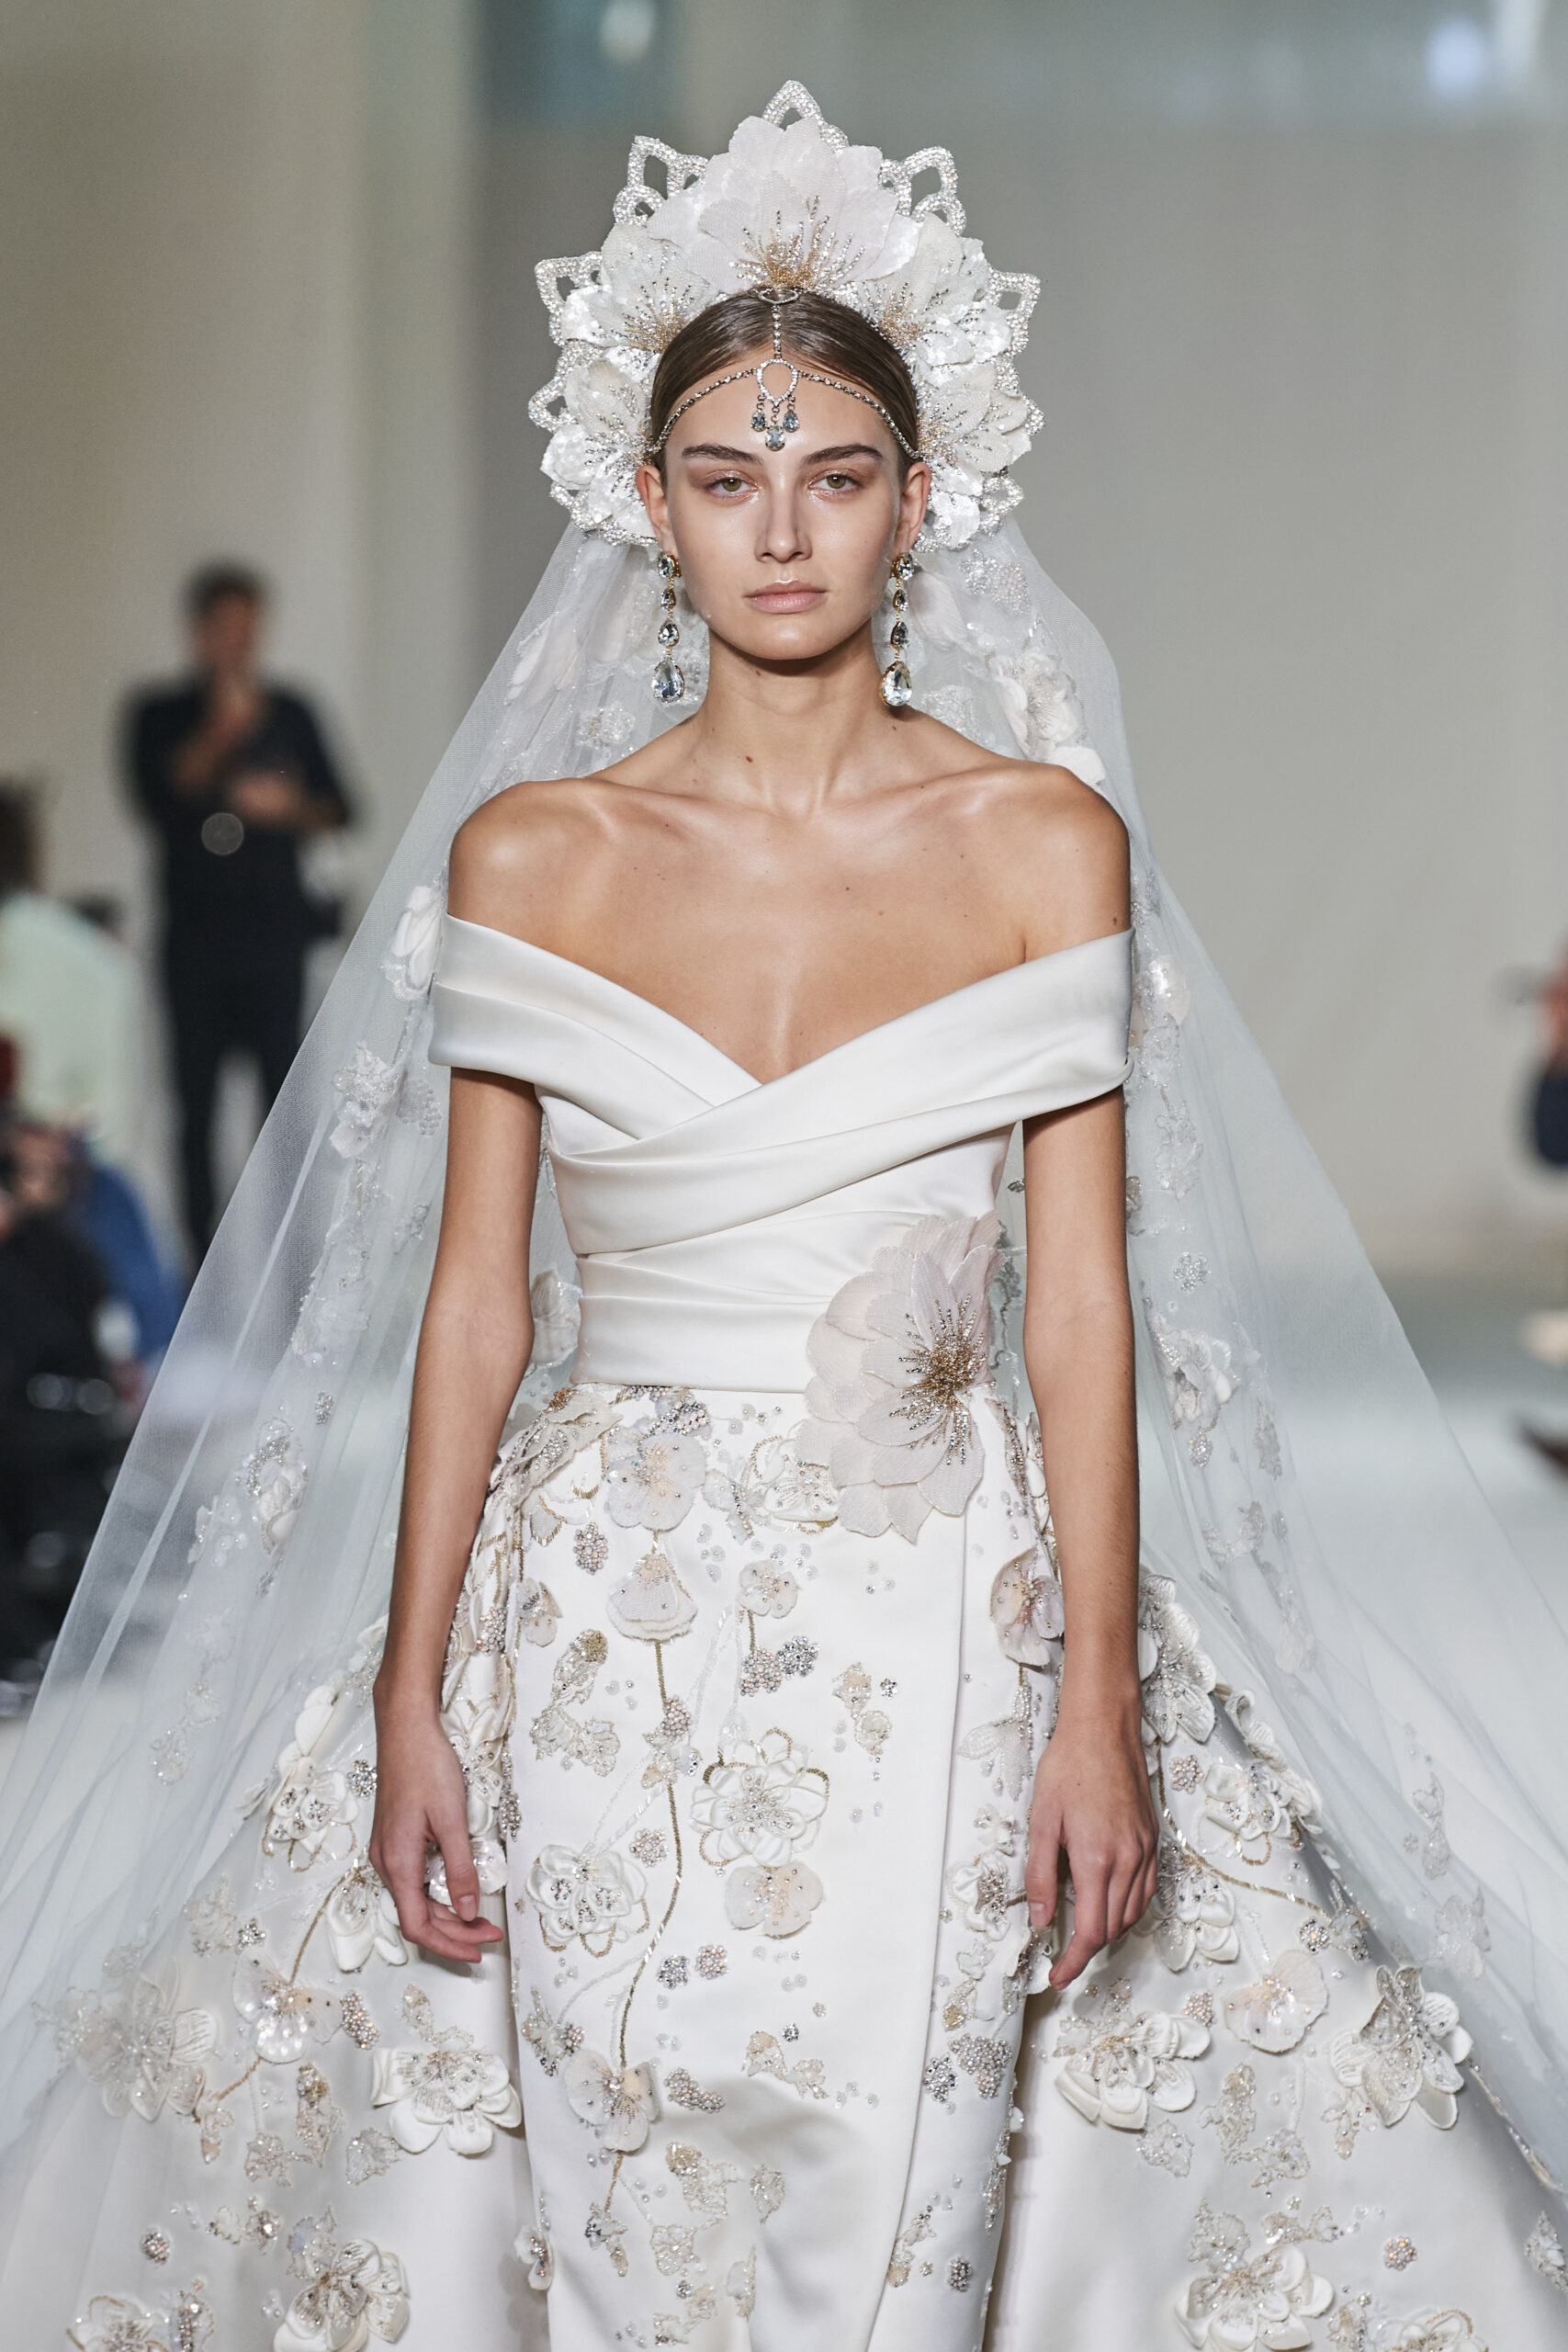 تصميمات فساتين زفاف من أسبوع الموضة في باريس